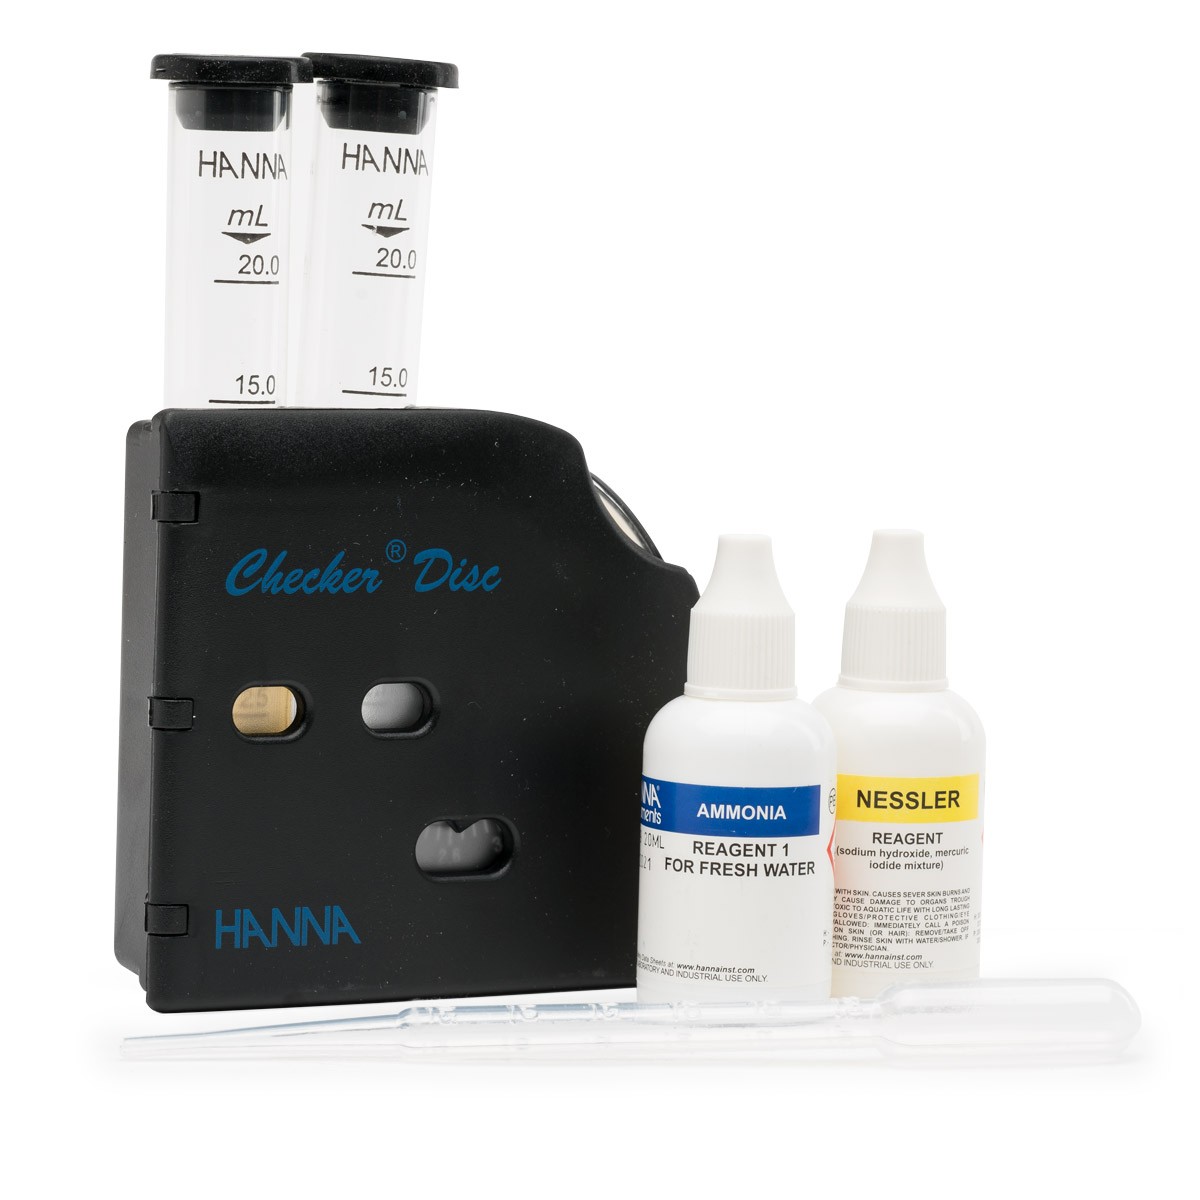 Kit per l'analisi di ammoniaca per acqua dolce con Checker Disc - HI38049